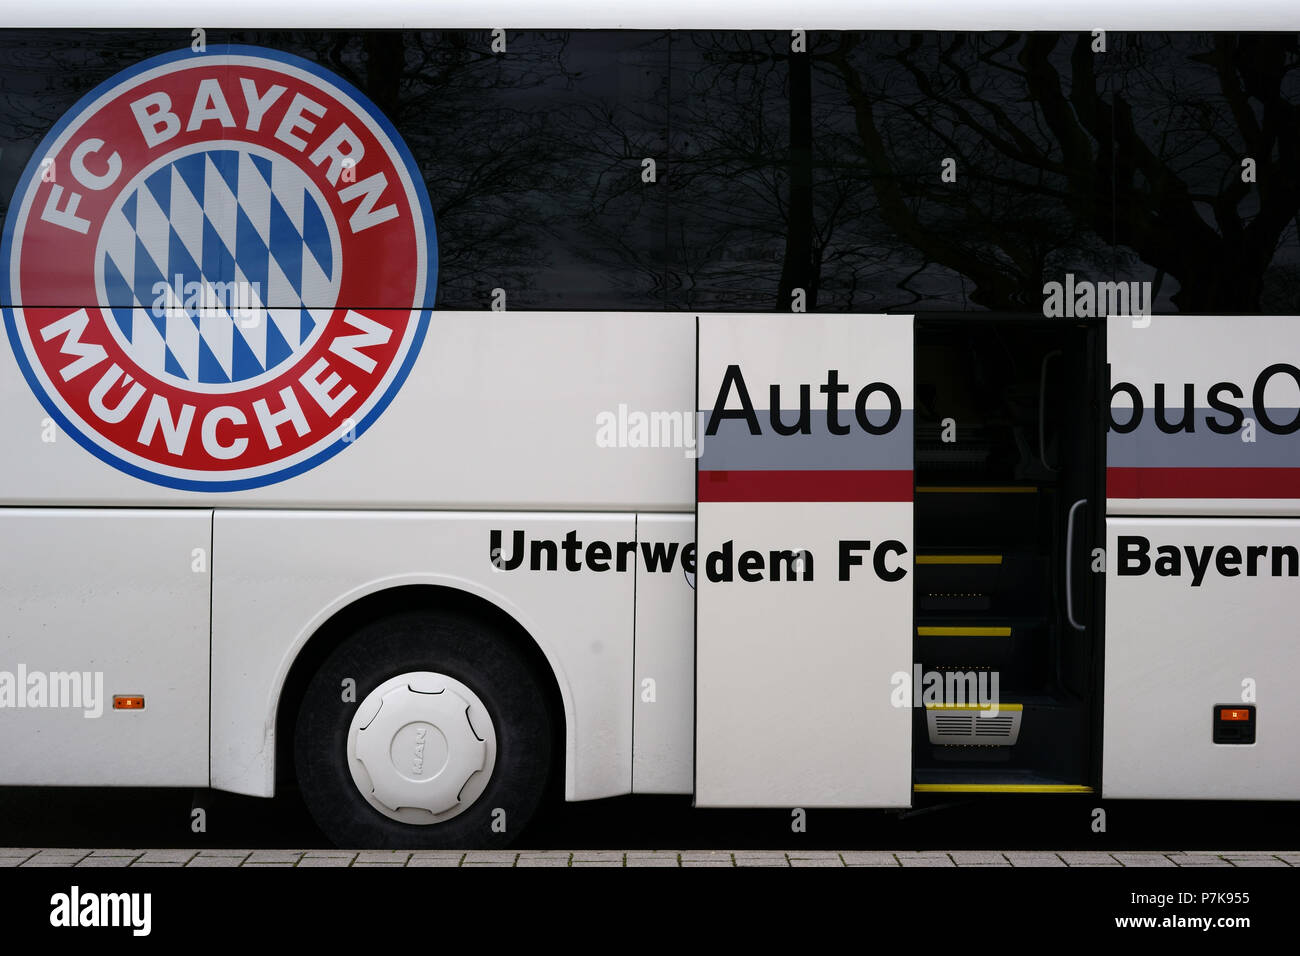 https://c8.alamy.com/compde/p7k955/das-emblem-der-fussballverein-fc-bayern-munchen-auf-das-team-bus-an-einem-spiel-in-stuttgart-p7k955.jpg